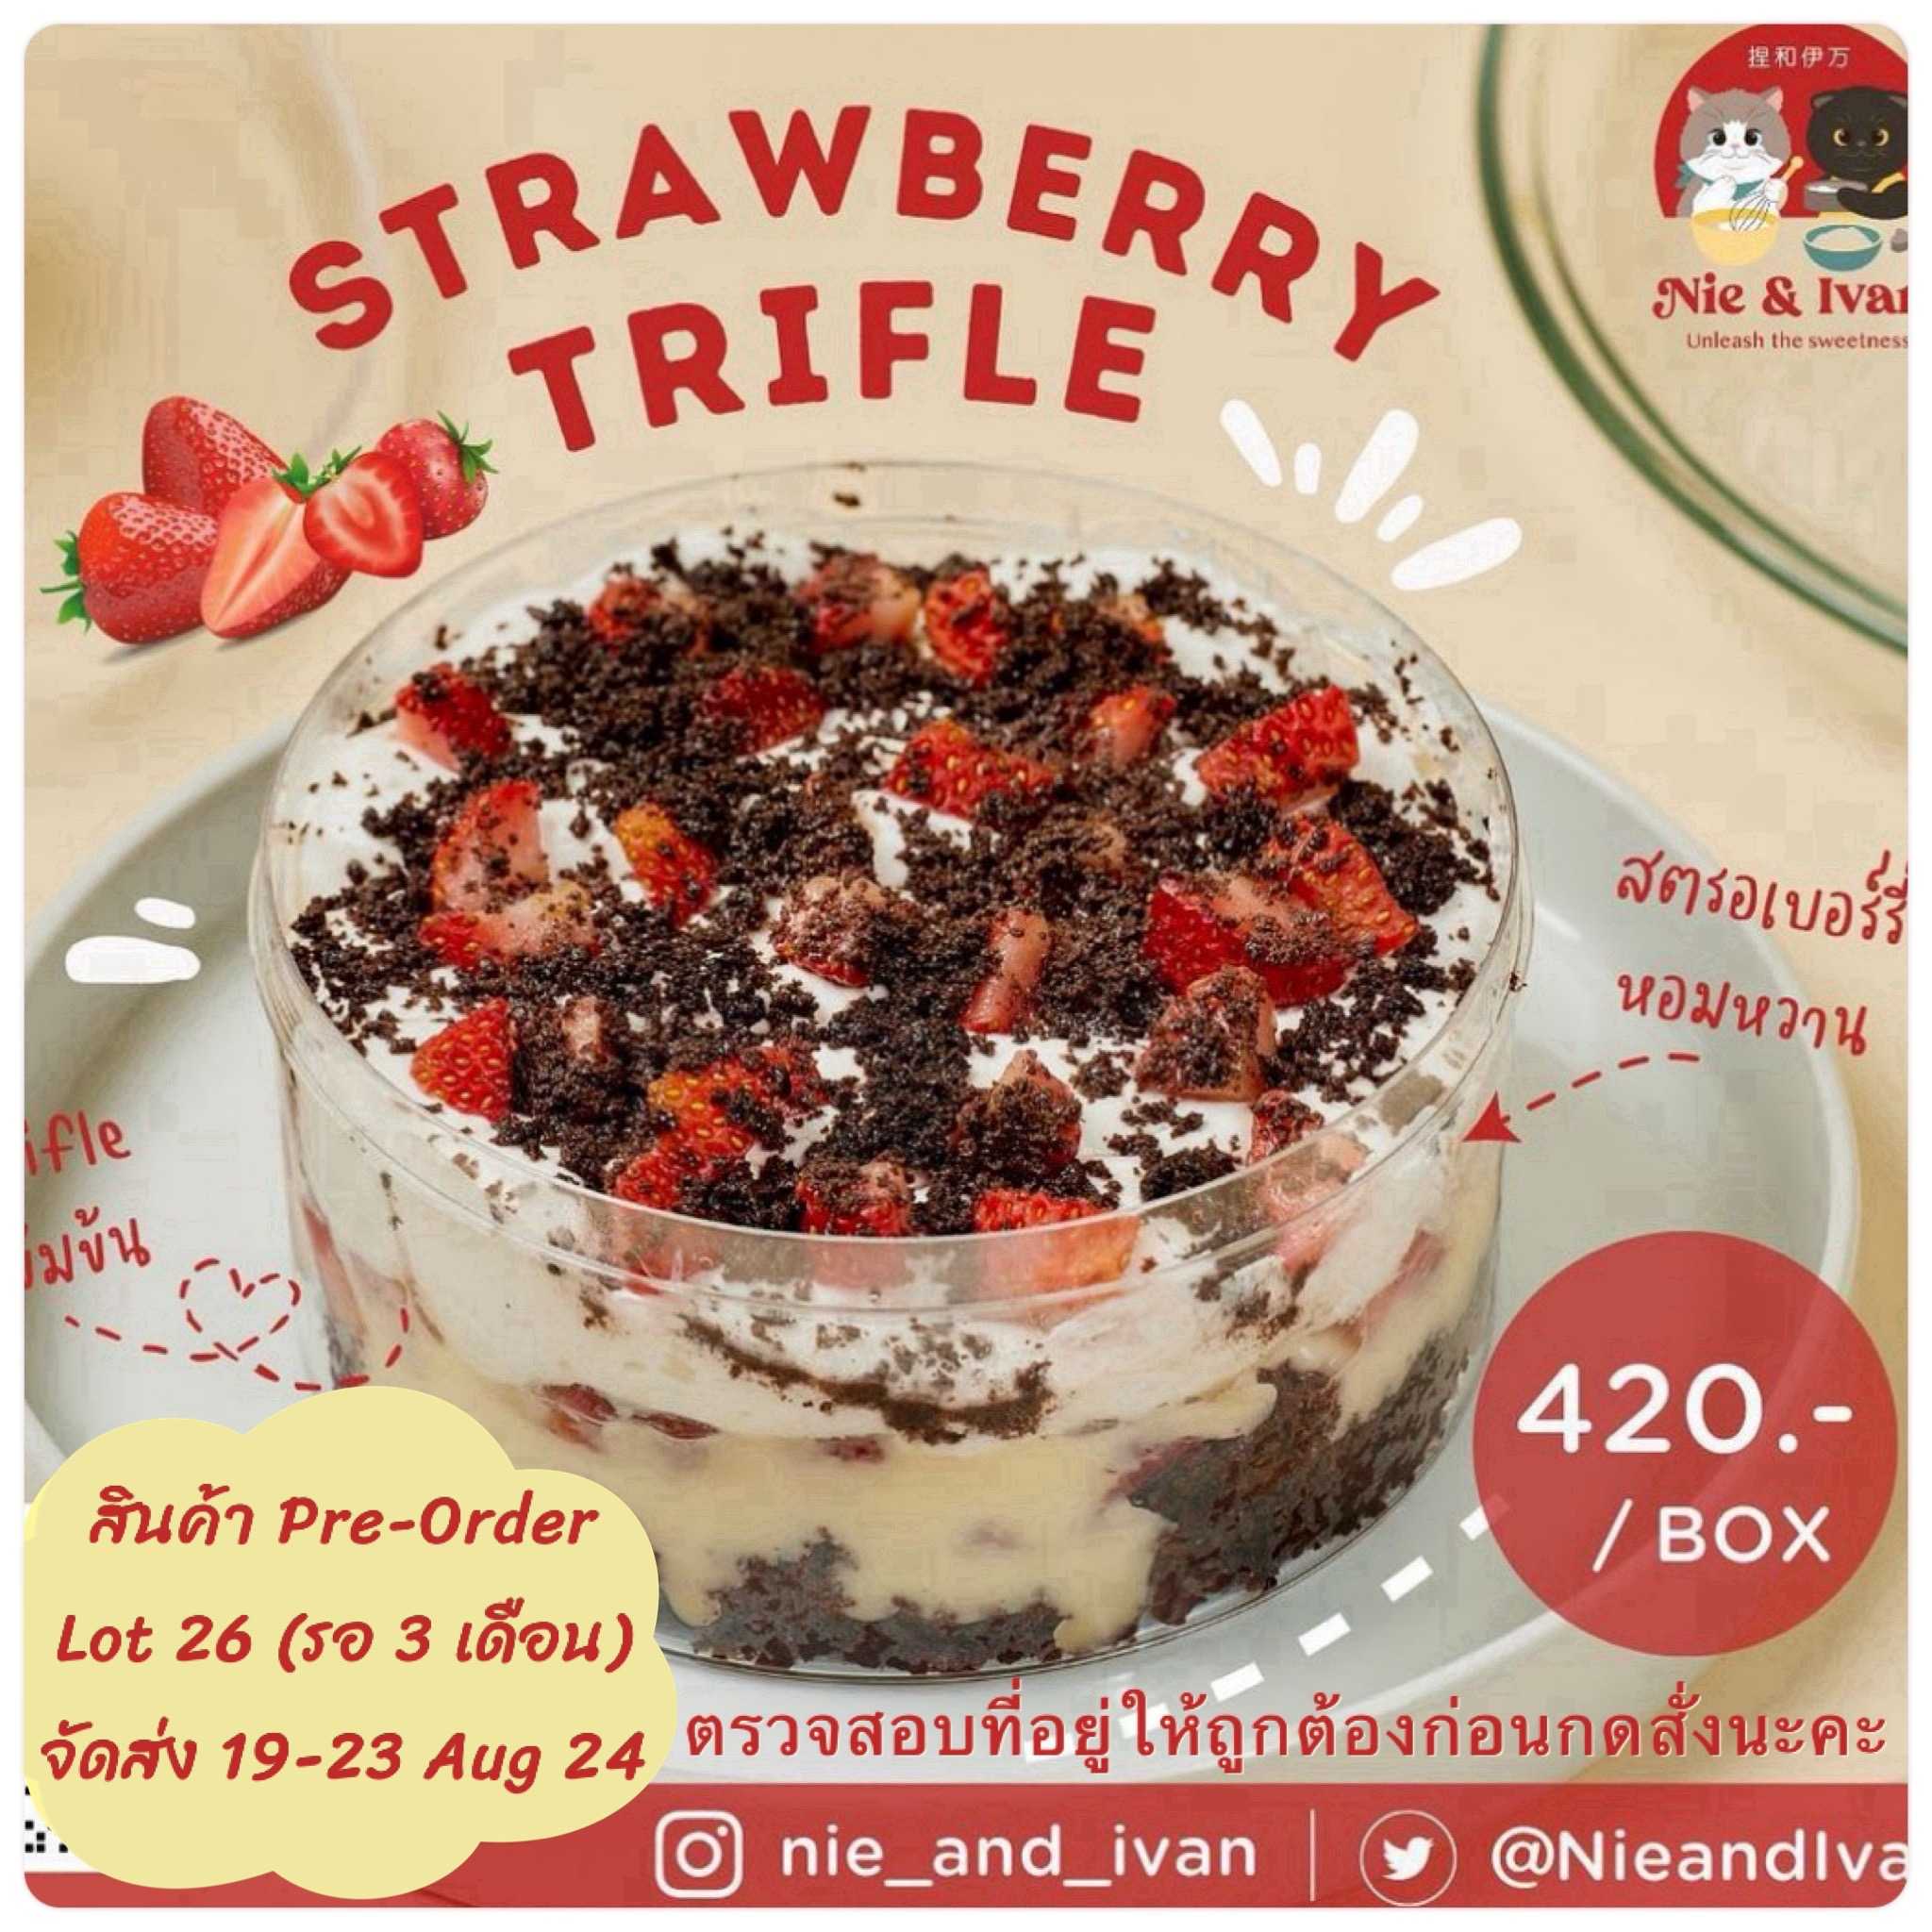 Strawberry trifle Lot26 (จัดส่งวันที่ 19-23 สิงหาคม) ขนมยอดนิยม